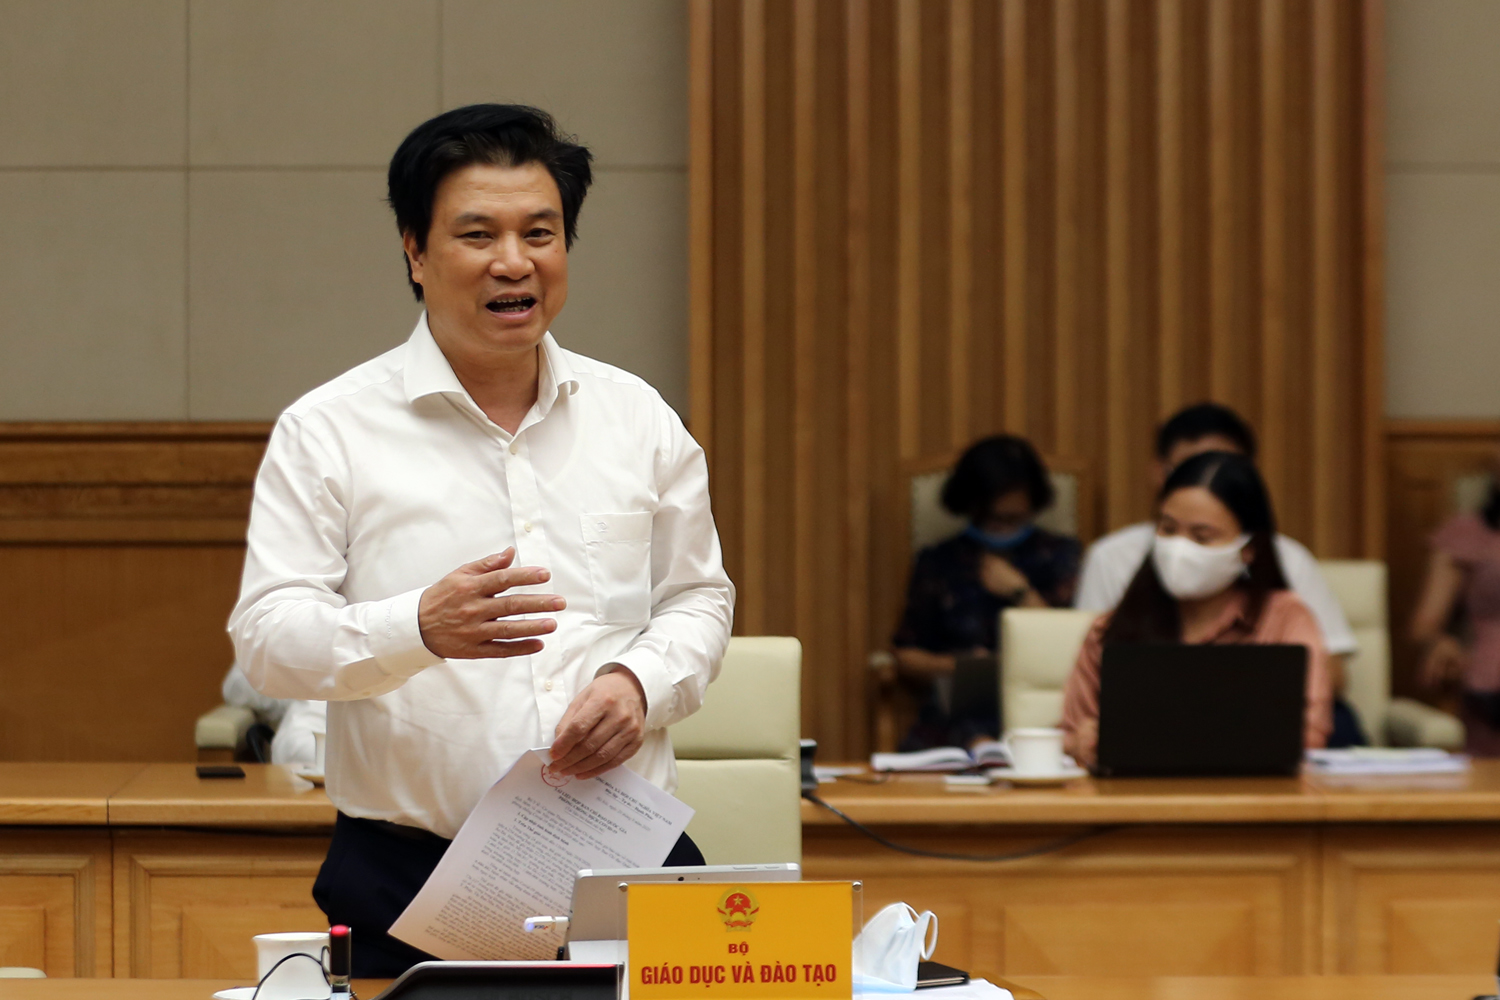 Thứ trưởng Bộ GD&ĐT Nguyễn Hữu Độ cho biết phương án chuẩn bị thi tốt nghiệp THPT đợt 2. Ảnh: VGP/Đình Nam